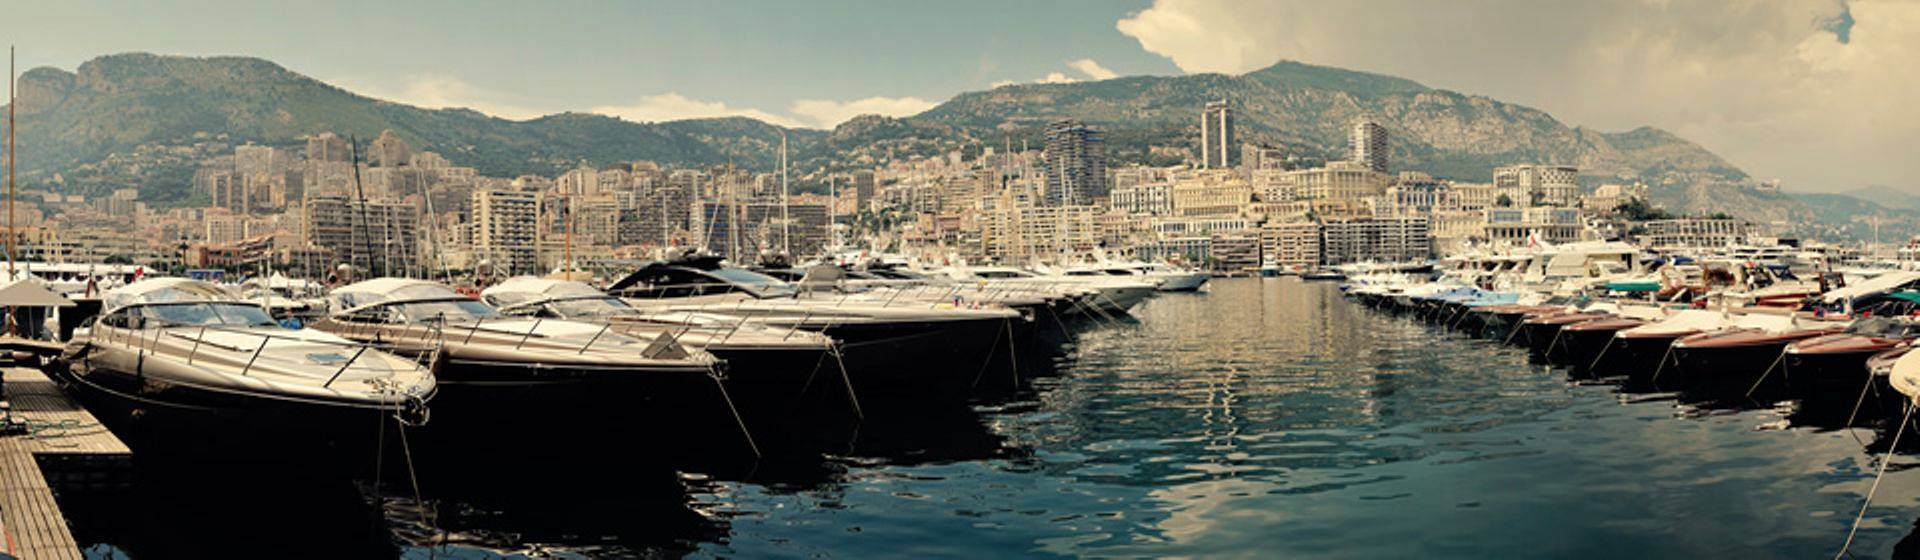 Holidays to Monaco Image